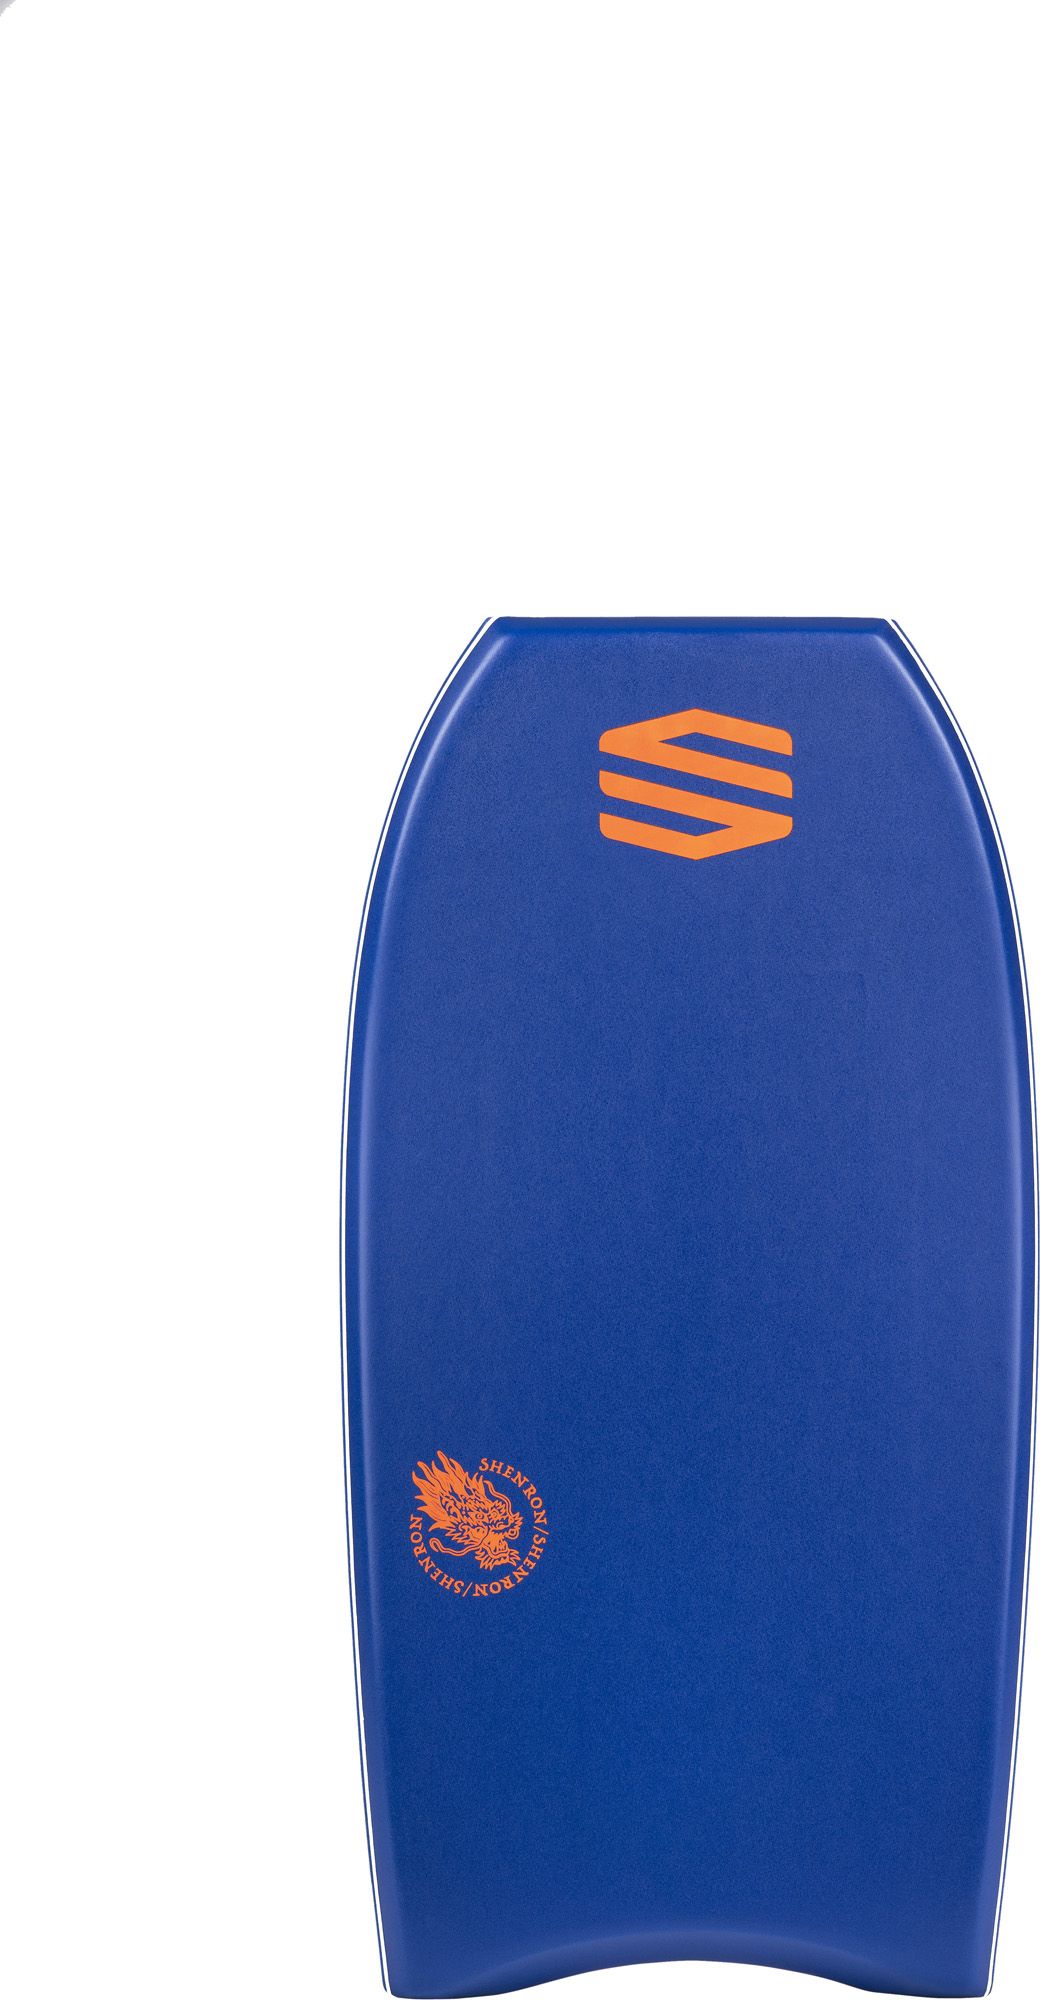 Planche de bodyboard Shenron PE Dark blue / fluro red - Improve Series 